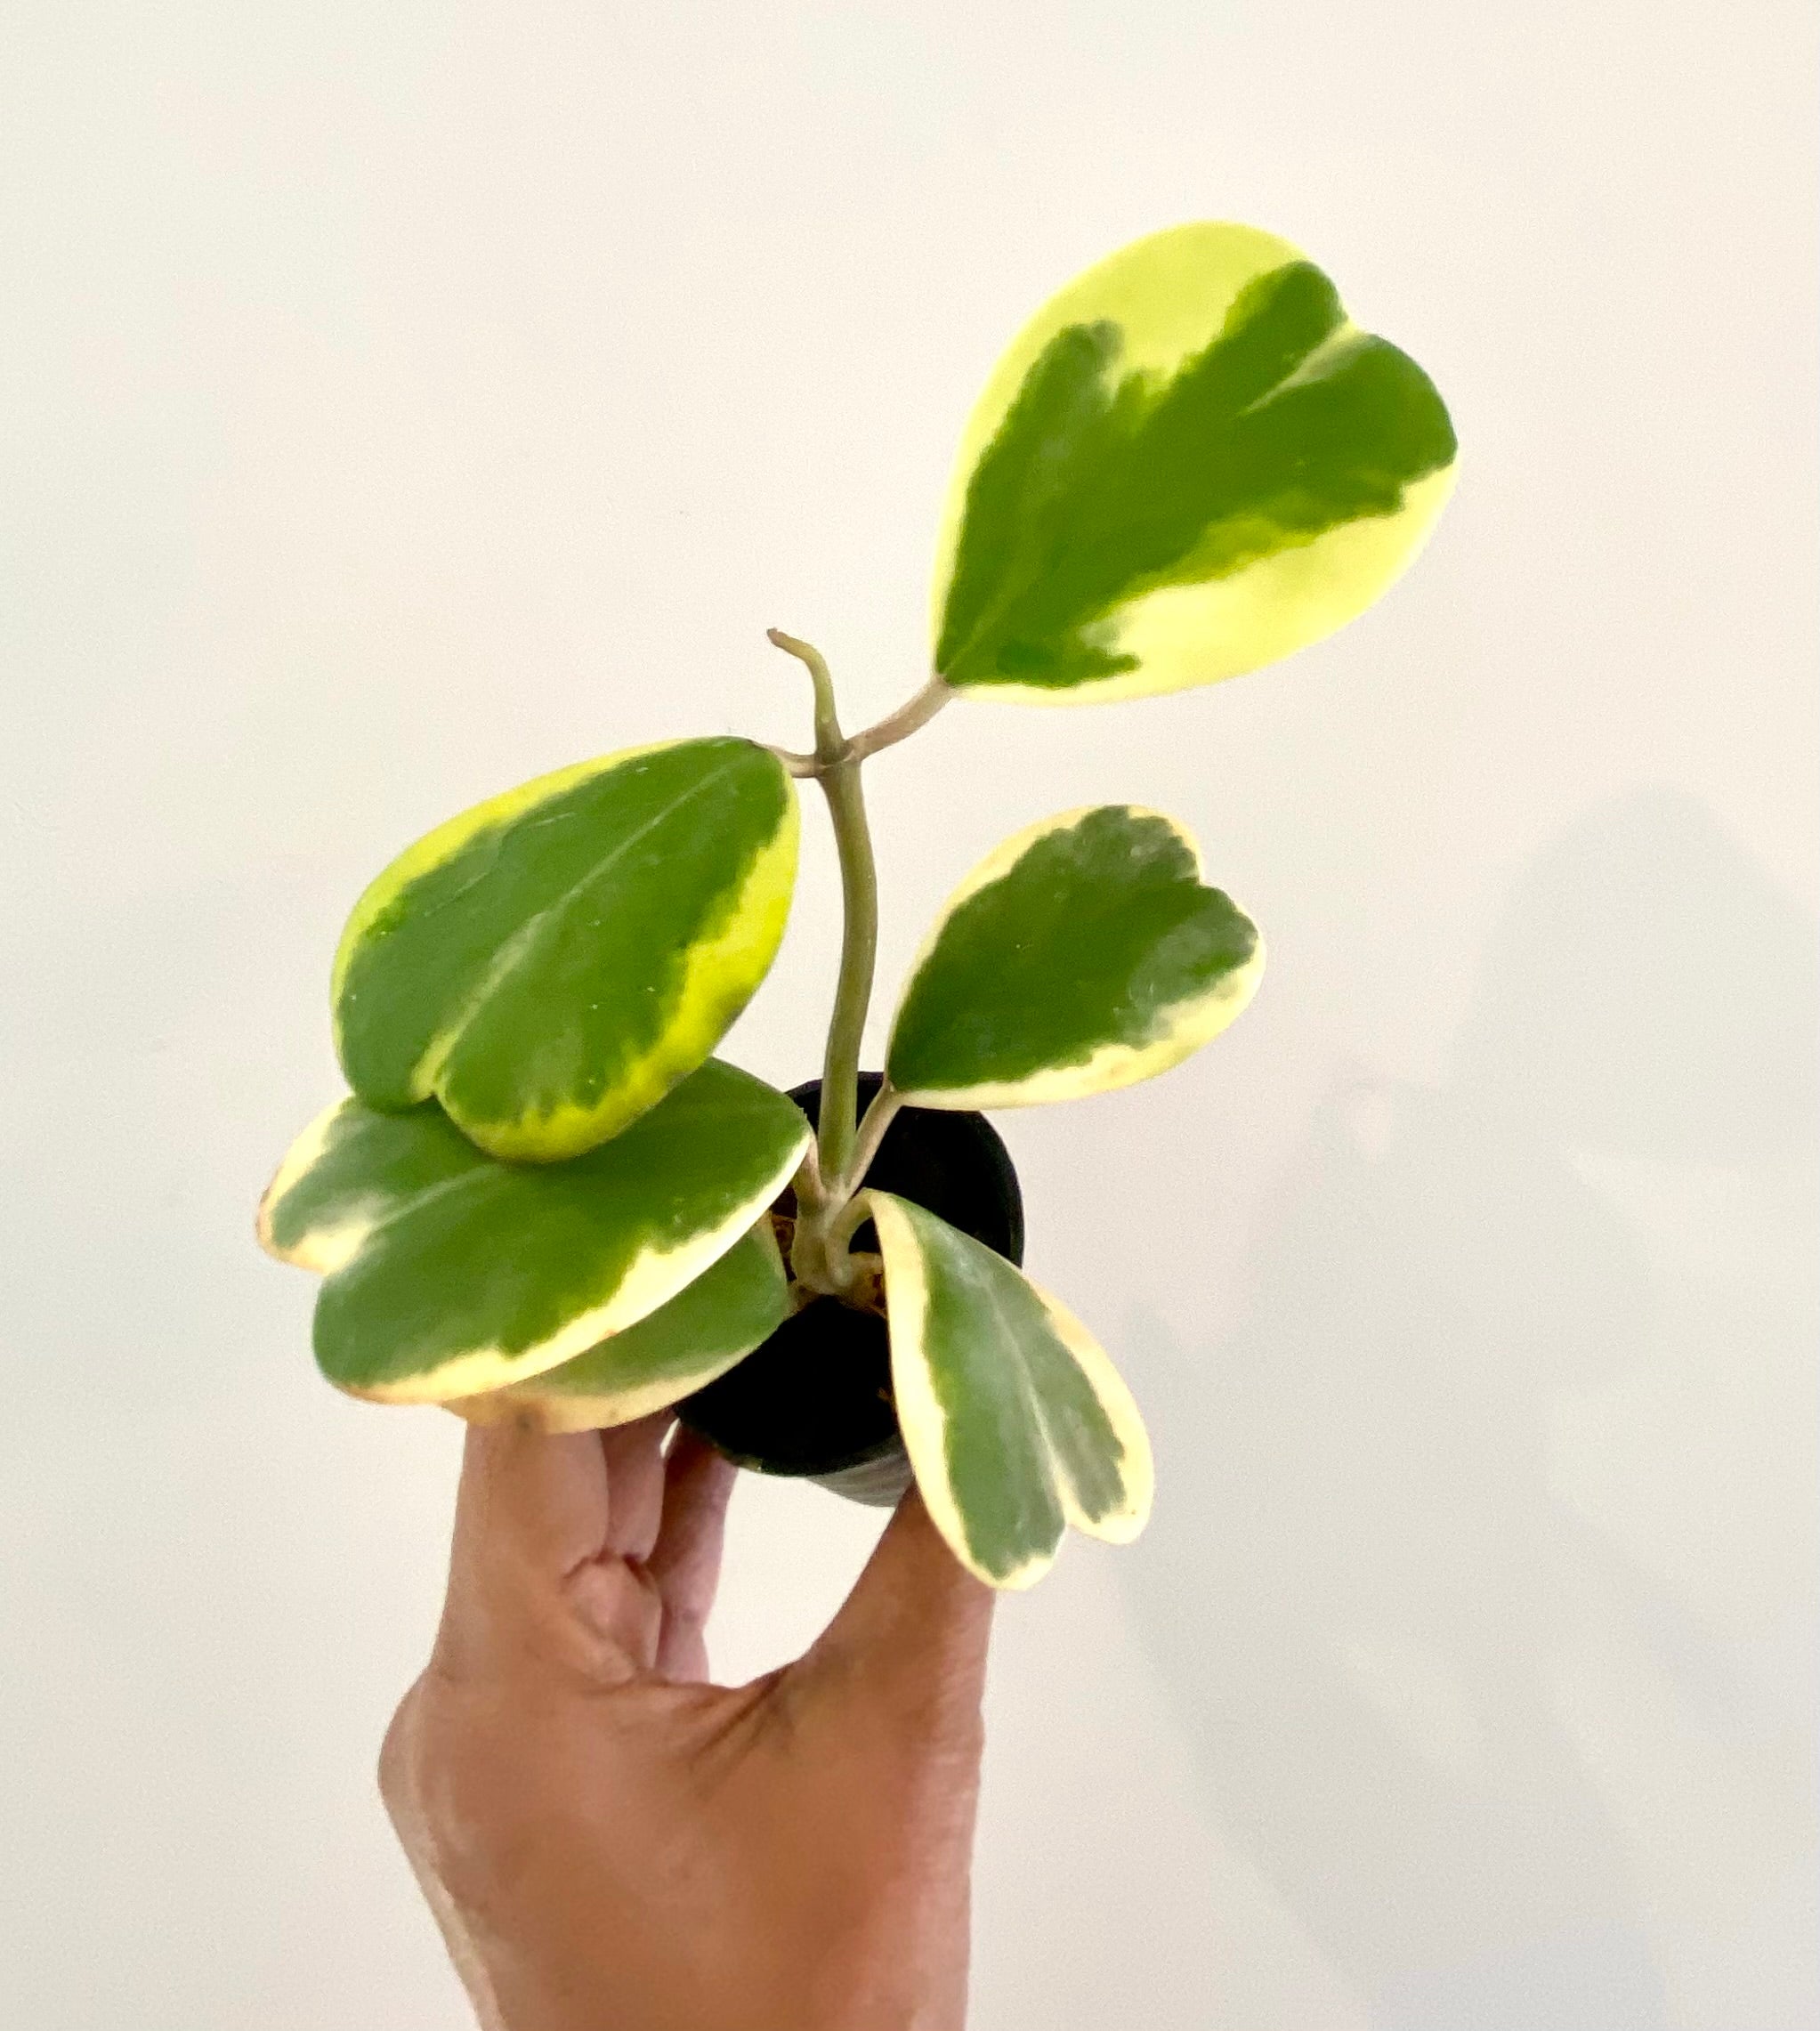 Hoya Kerrii Heart 4-5 leaves